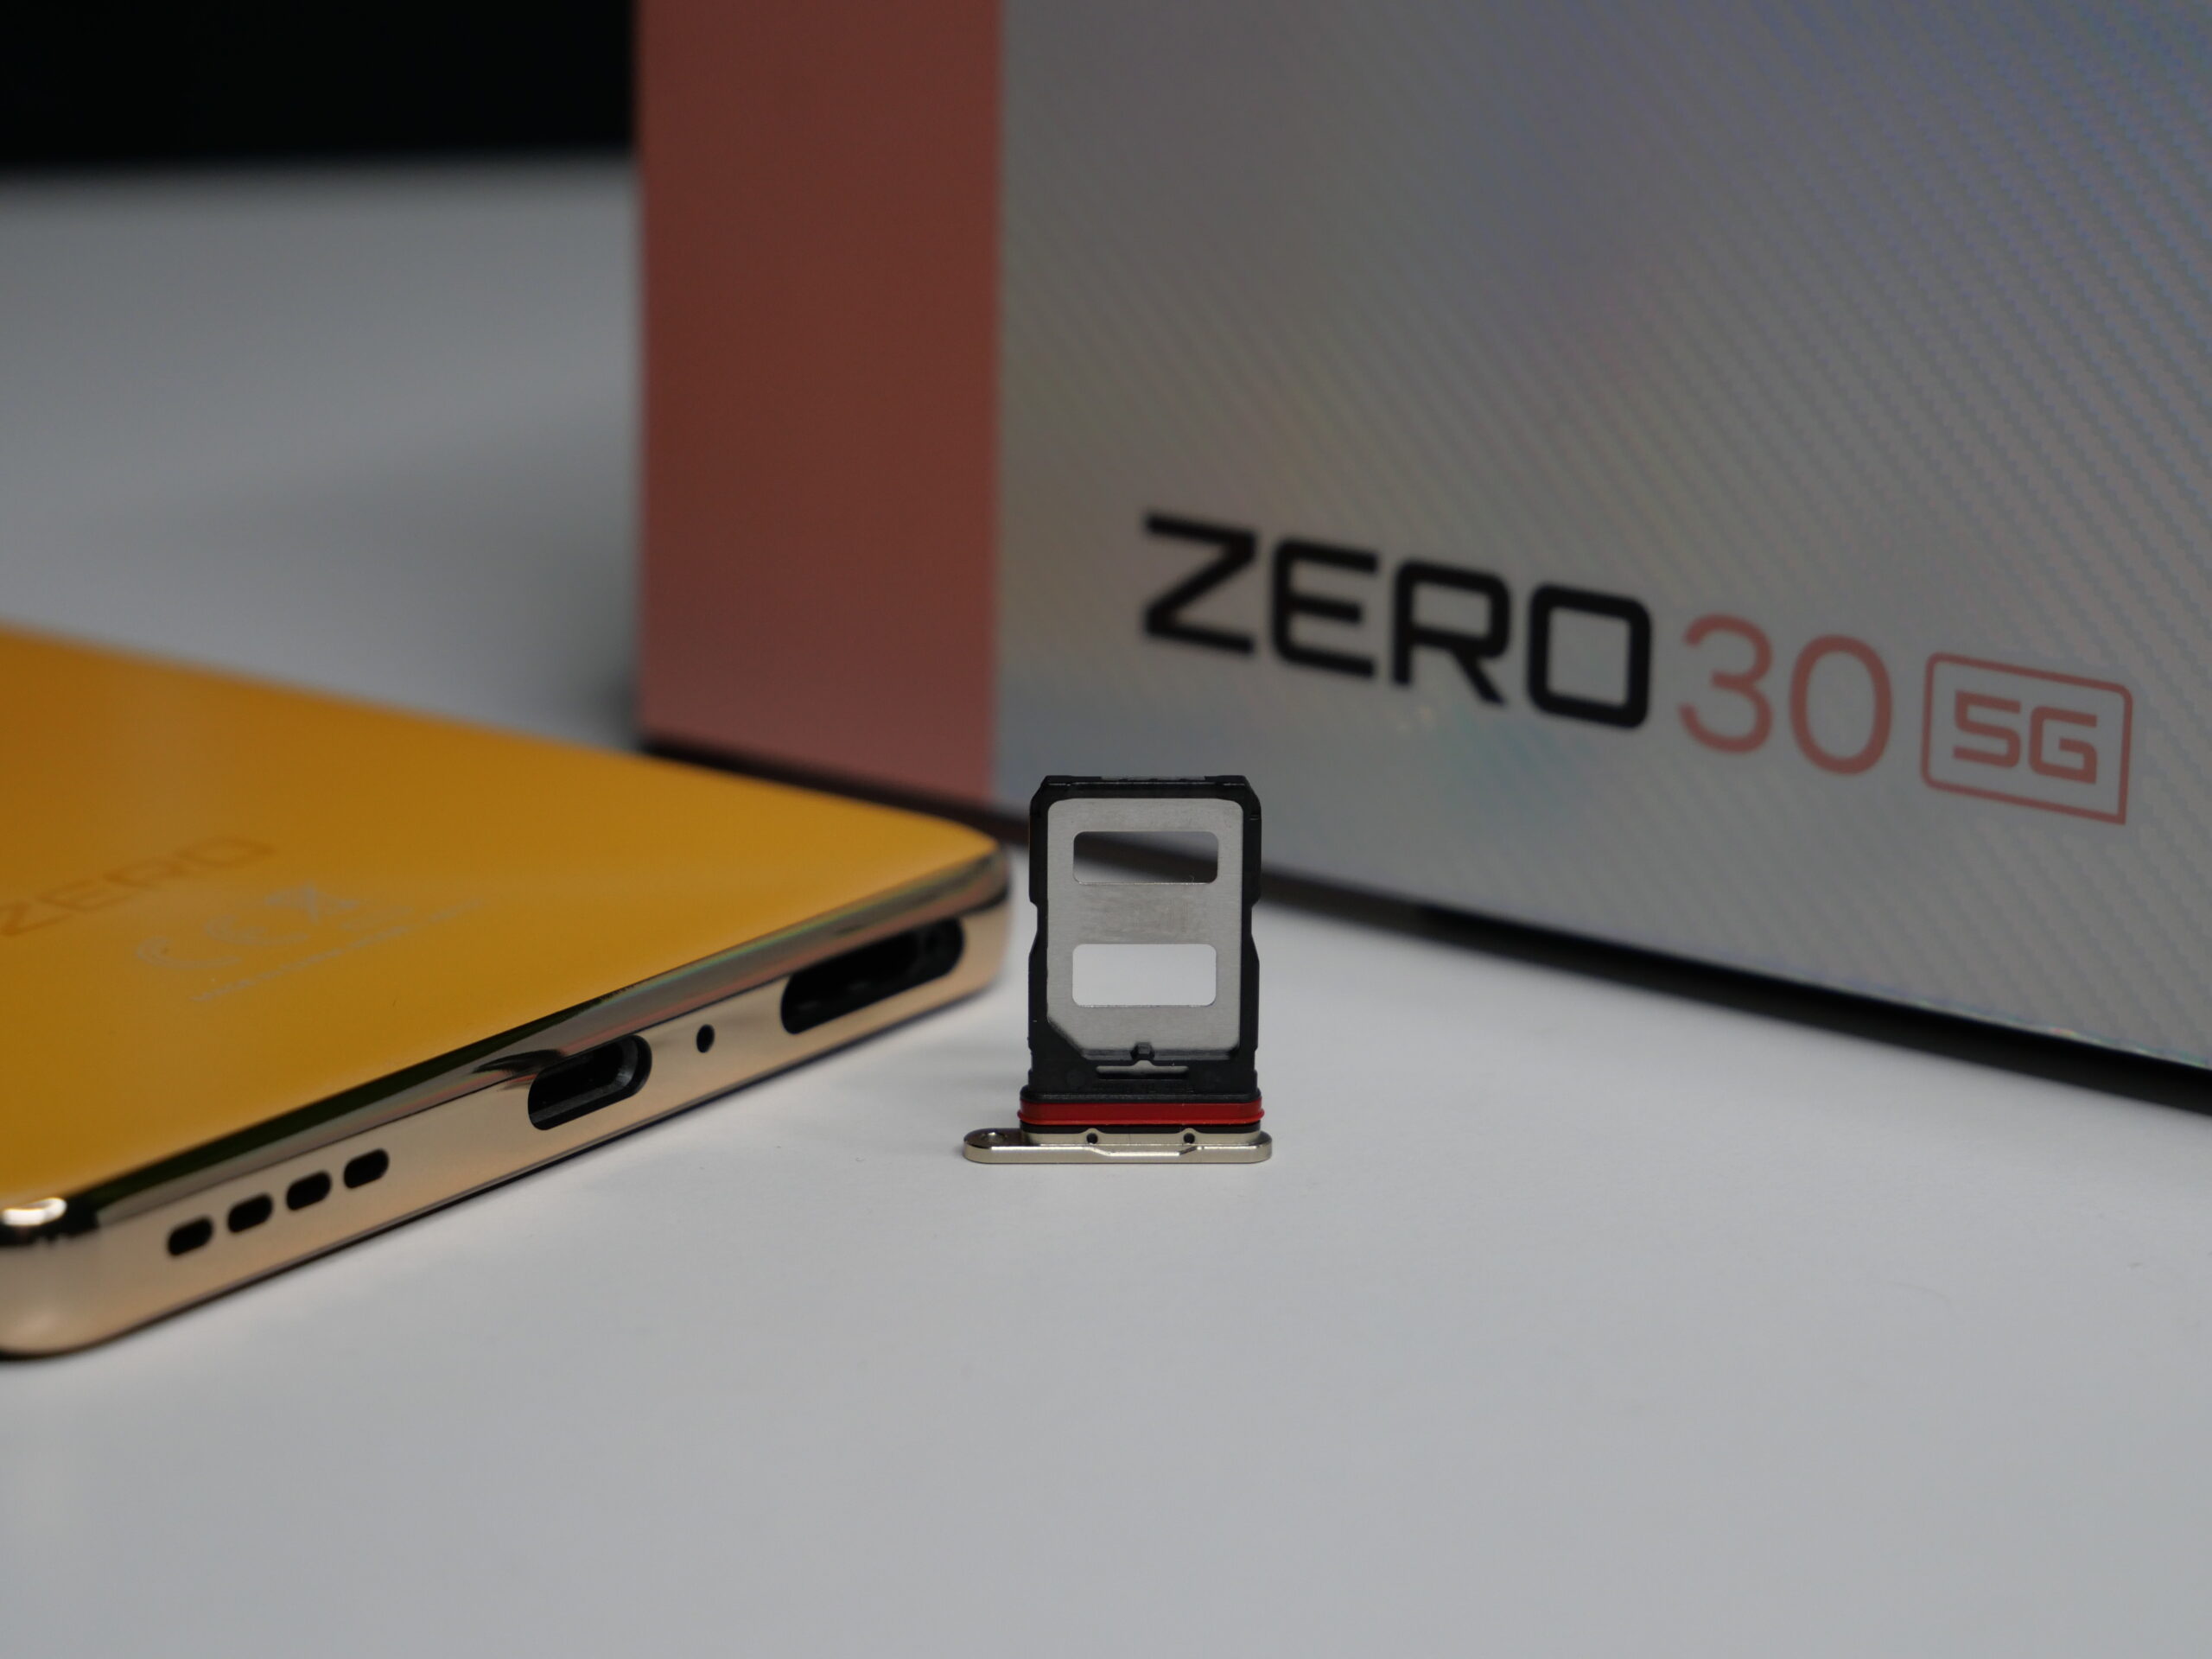 Złoty smartfon z napisem "ZERO" położony na białej powierzchni obok otwartej tacki karty SIM, w tle pudełko z napisem "ZERO 30 5G".